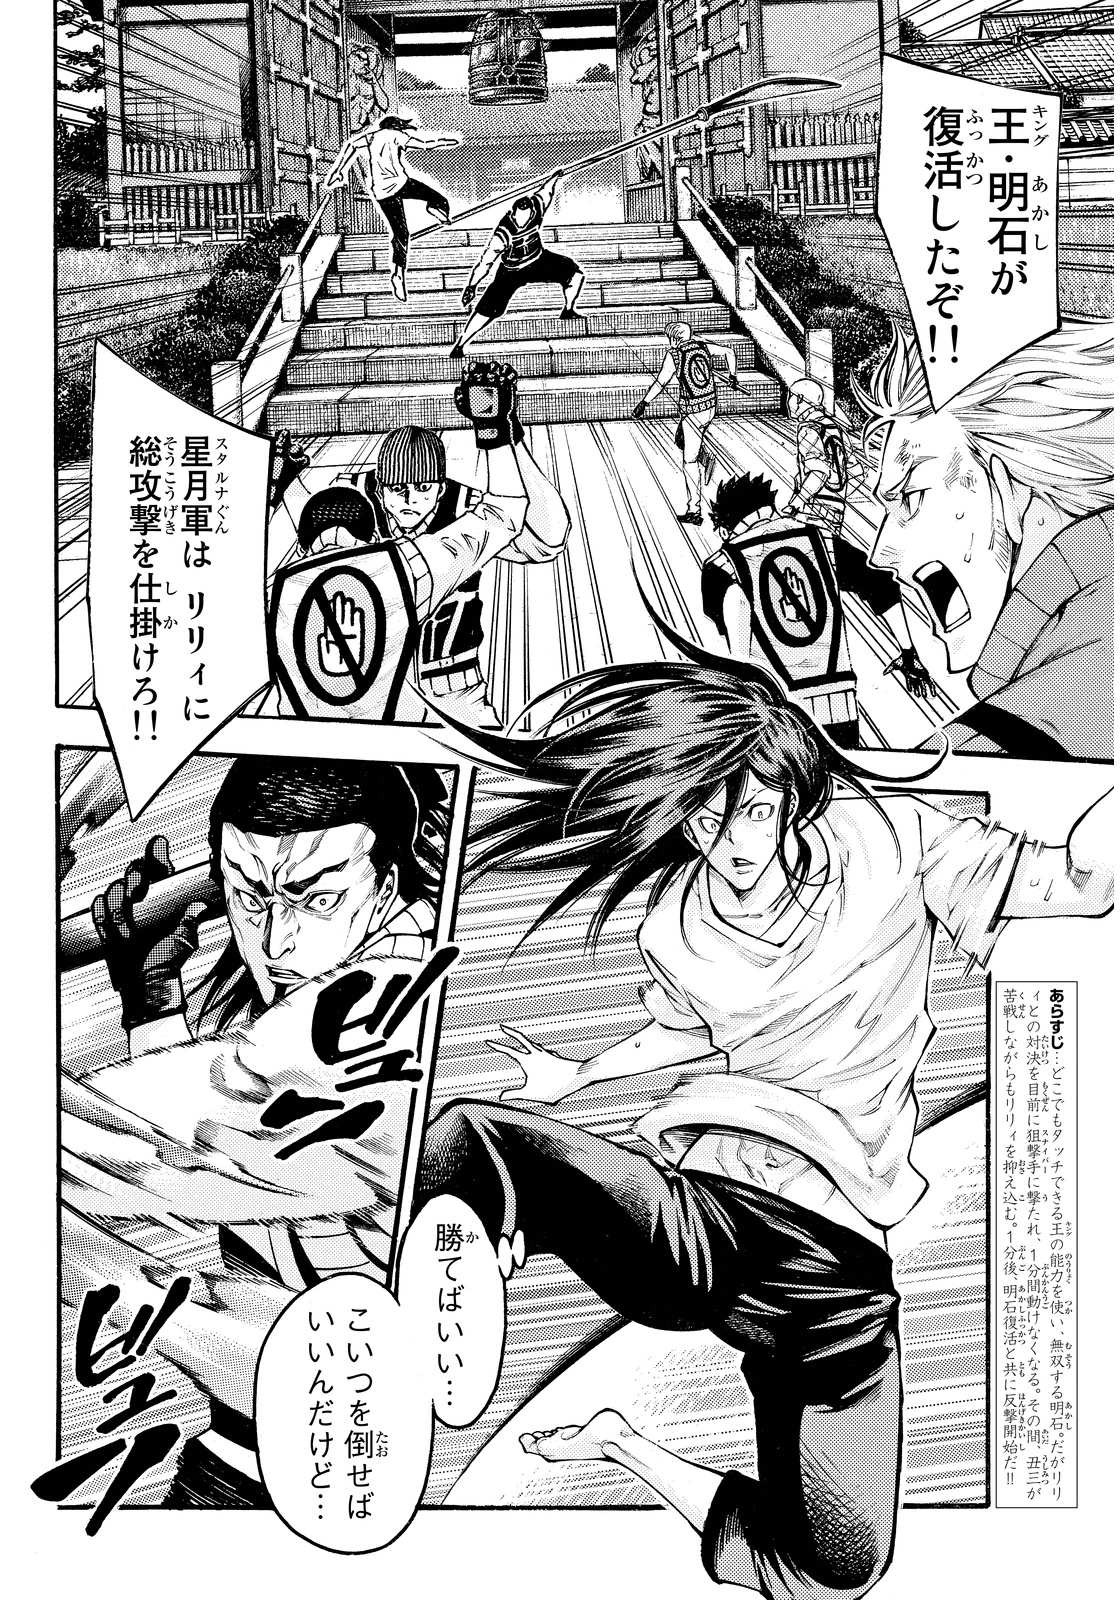 Kamisama_no_Ituori - Chapter 141 - Page 2